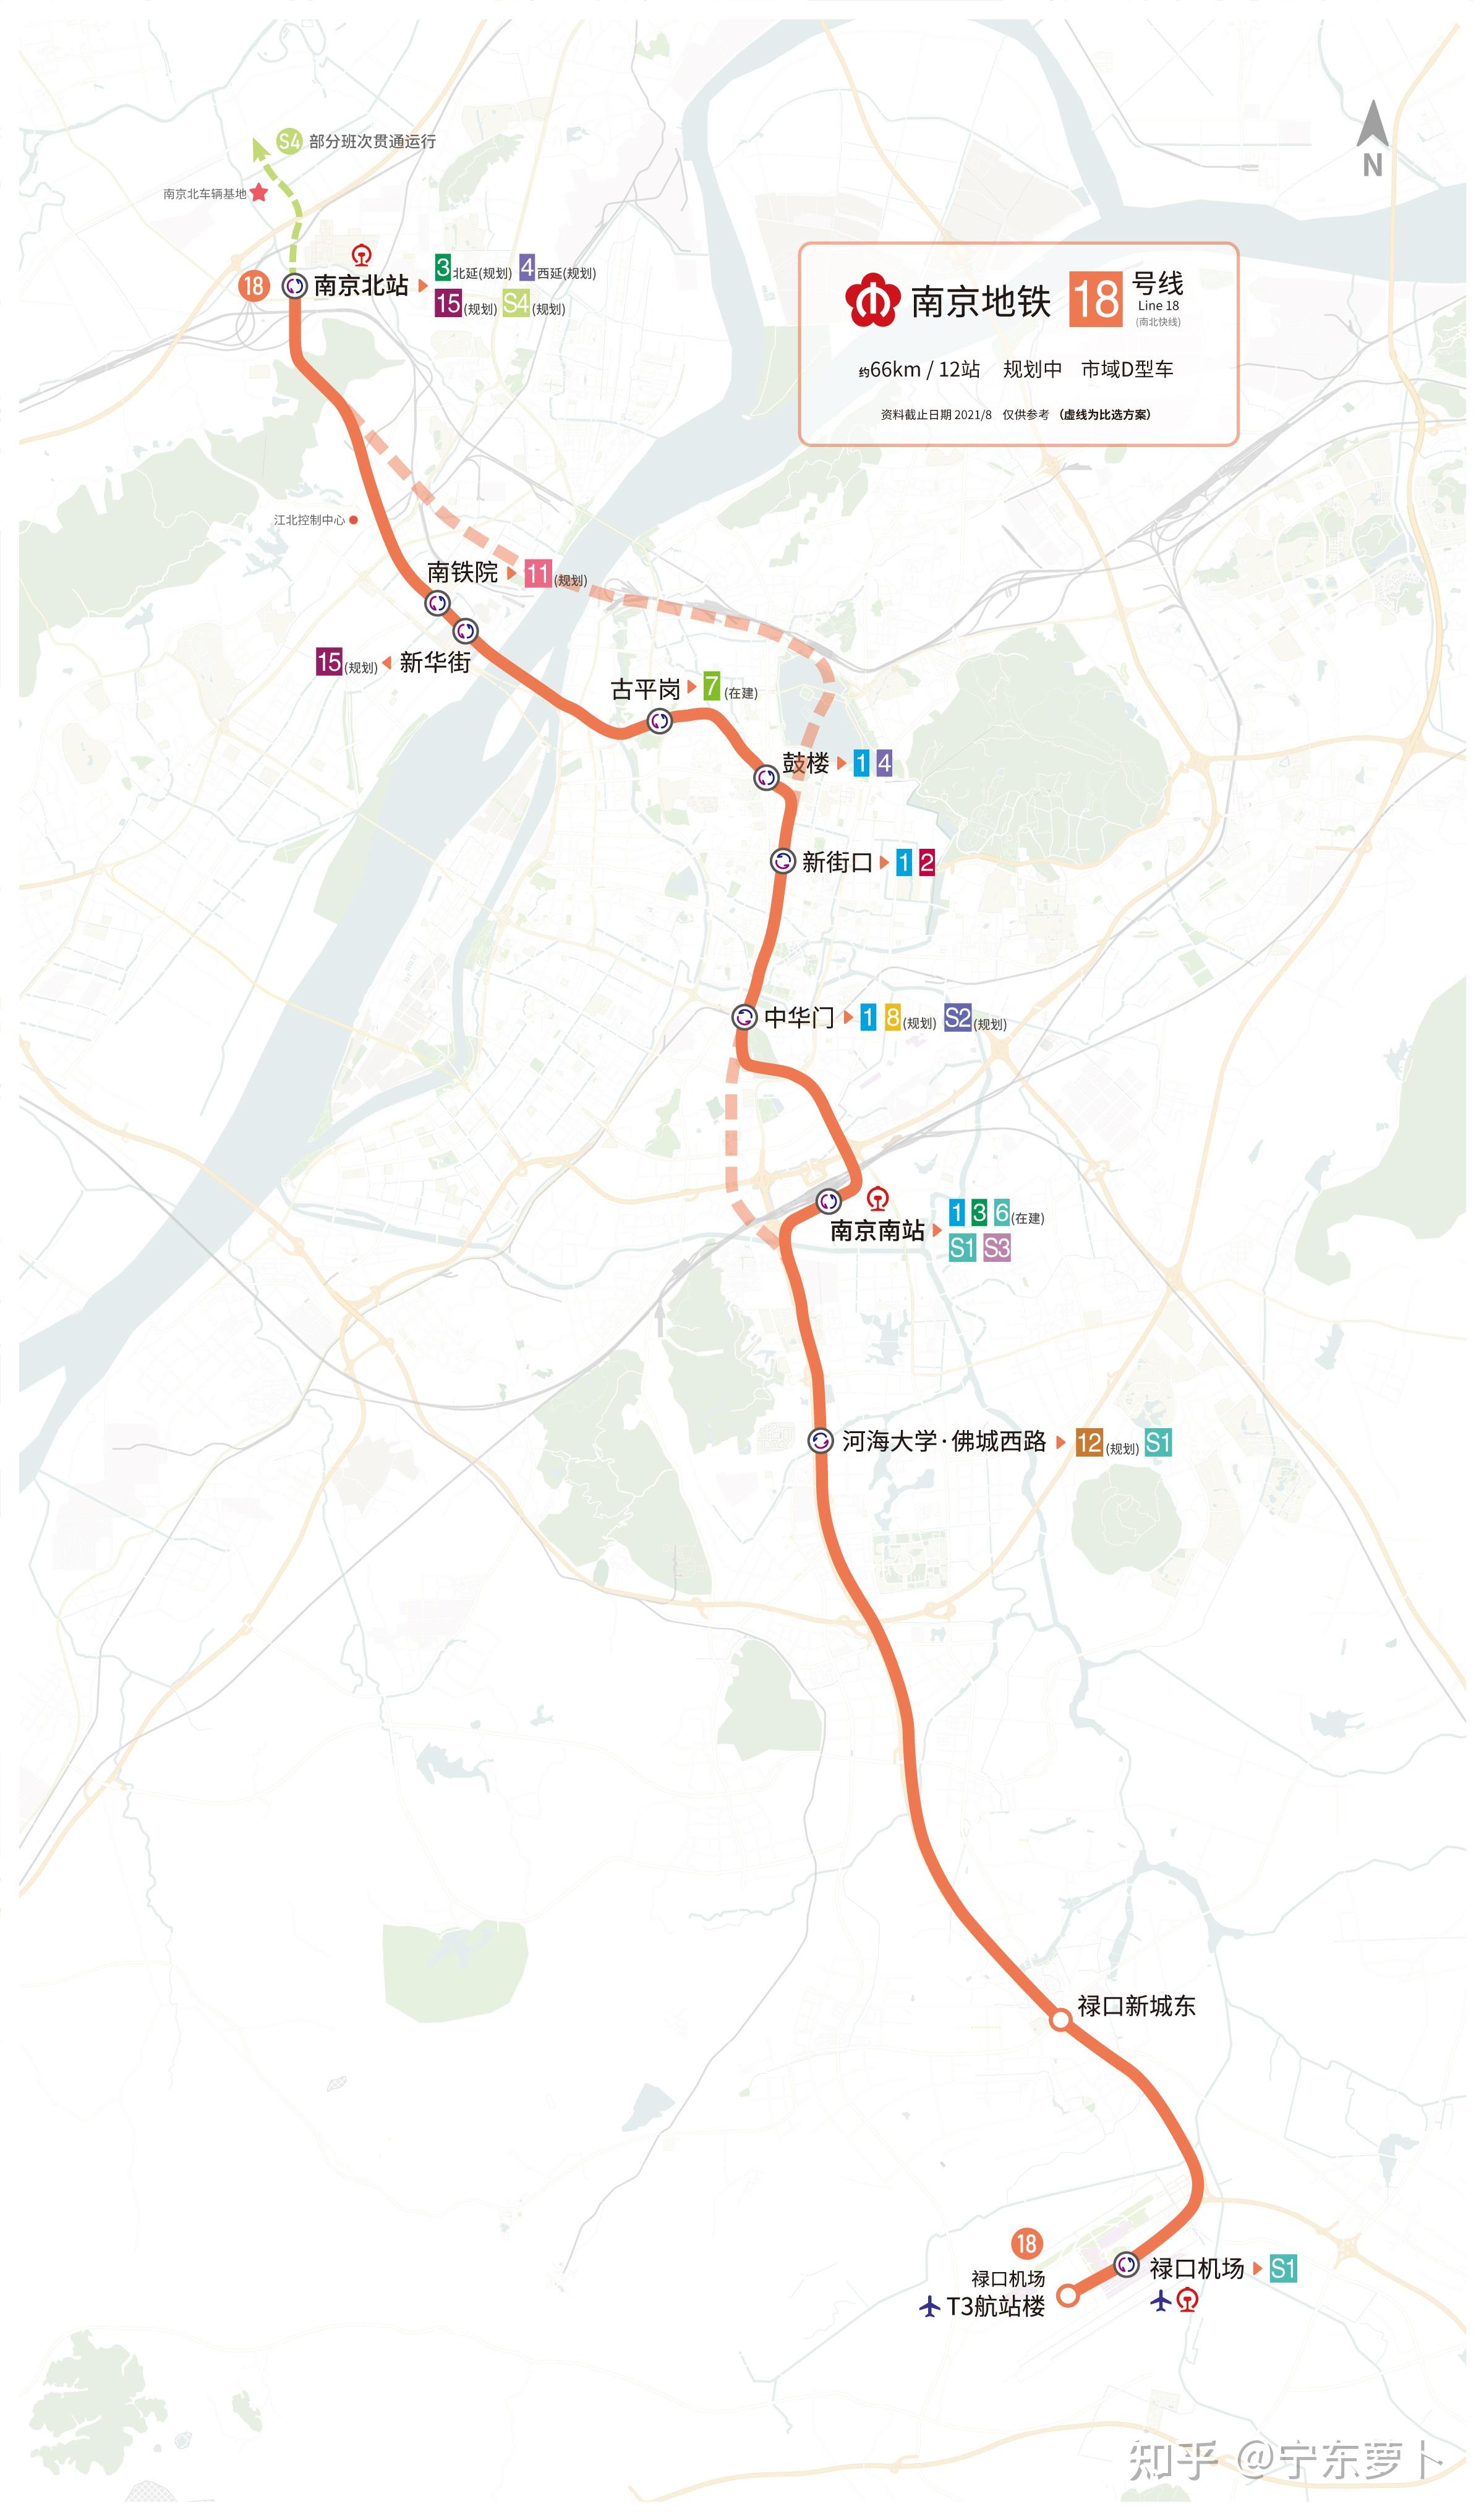 南京地铁远期线网规划图2035及各条线路建设规划情况介绍v17